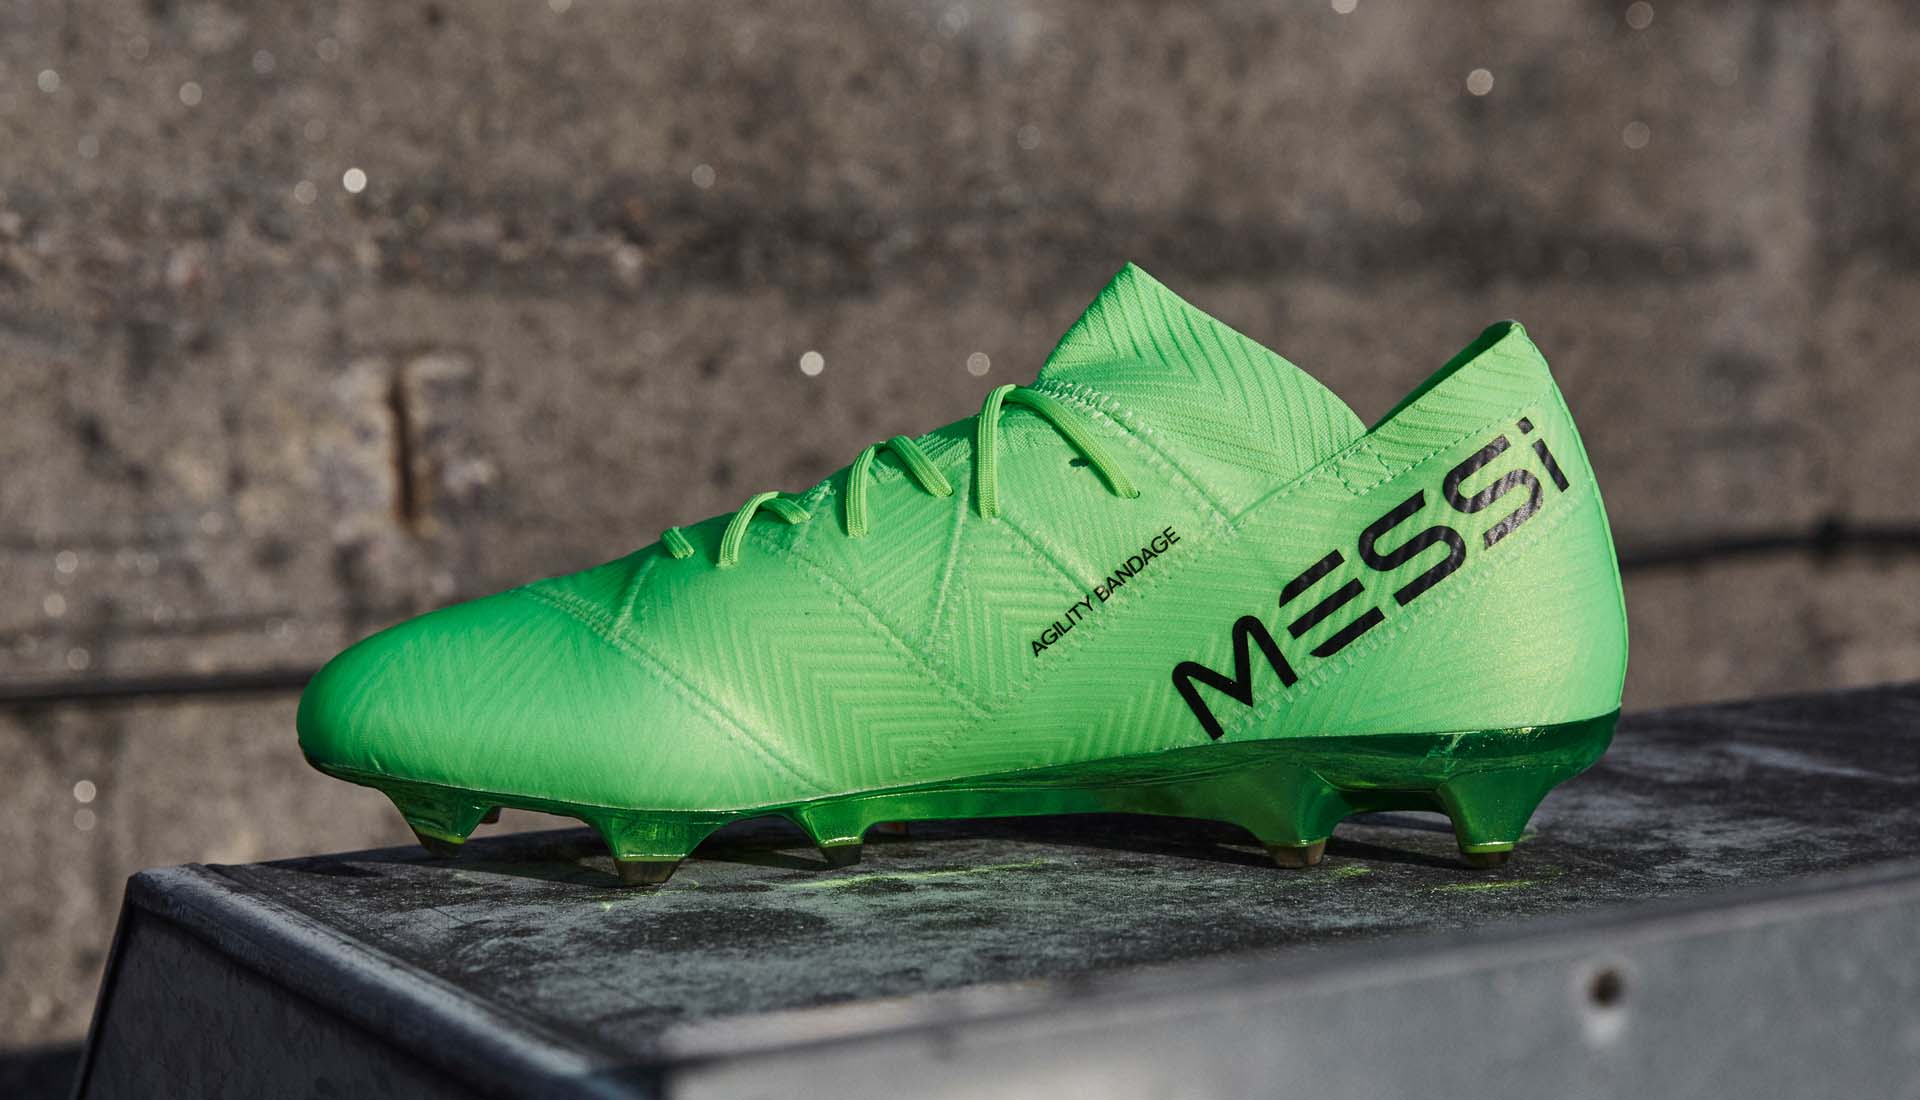 Giày bóng đá thi đấu của Messi được in chữ Messi ở gót giày